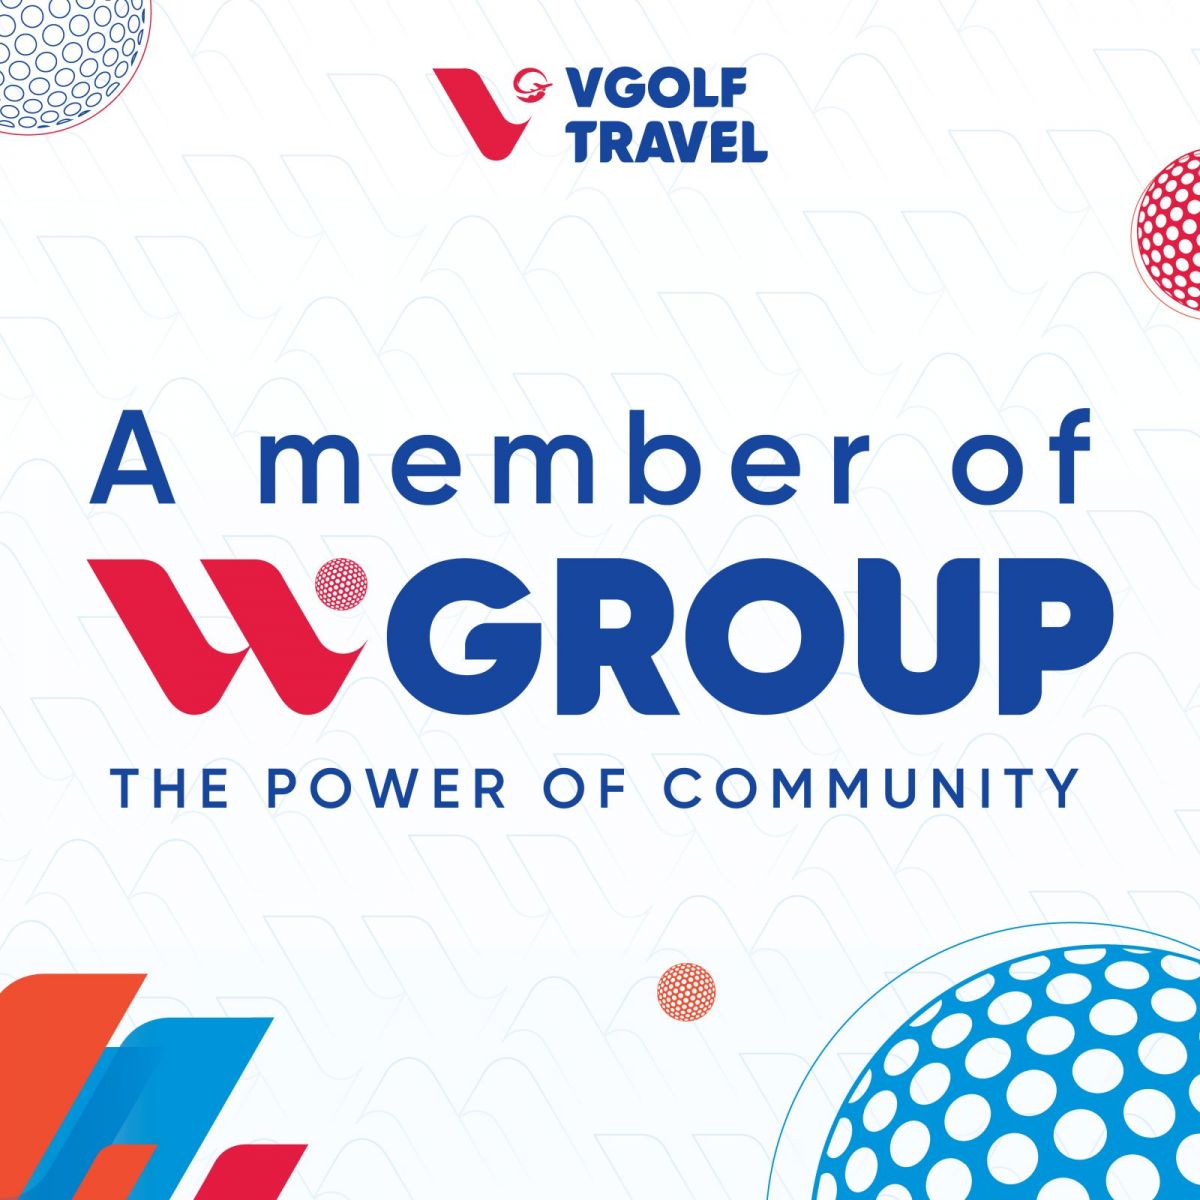 VGolf Travel tự hào là thành viên của wGroup